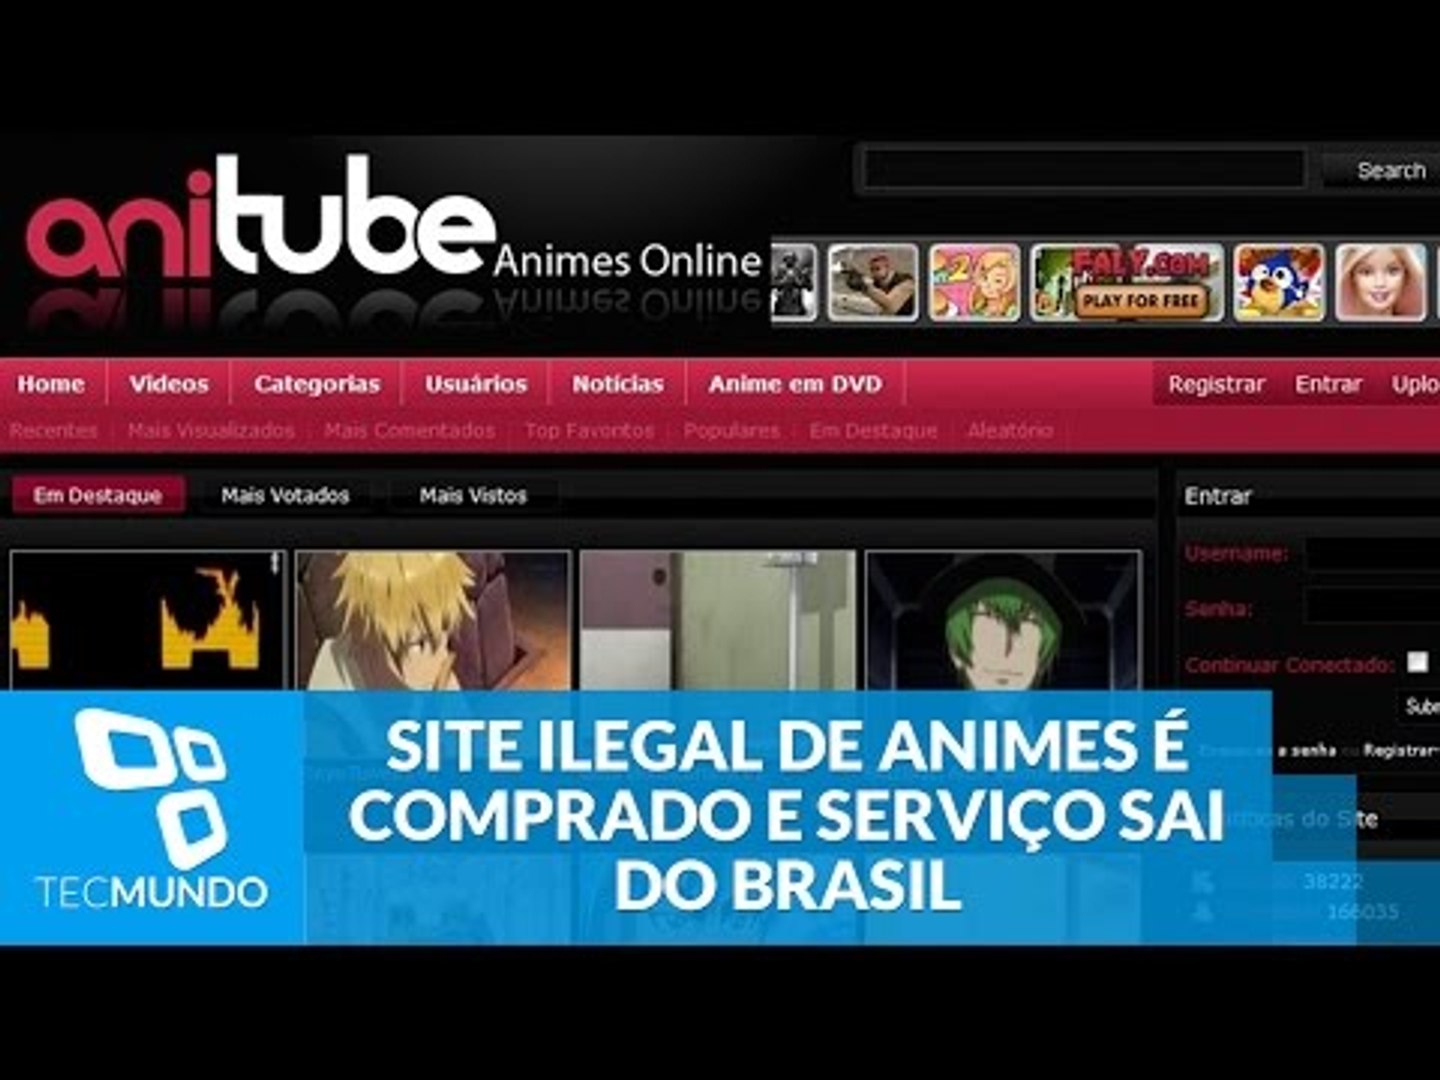 O fim do AniTube e sites de streaming ilegal de animes? A